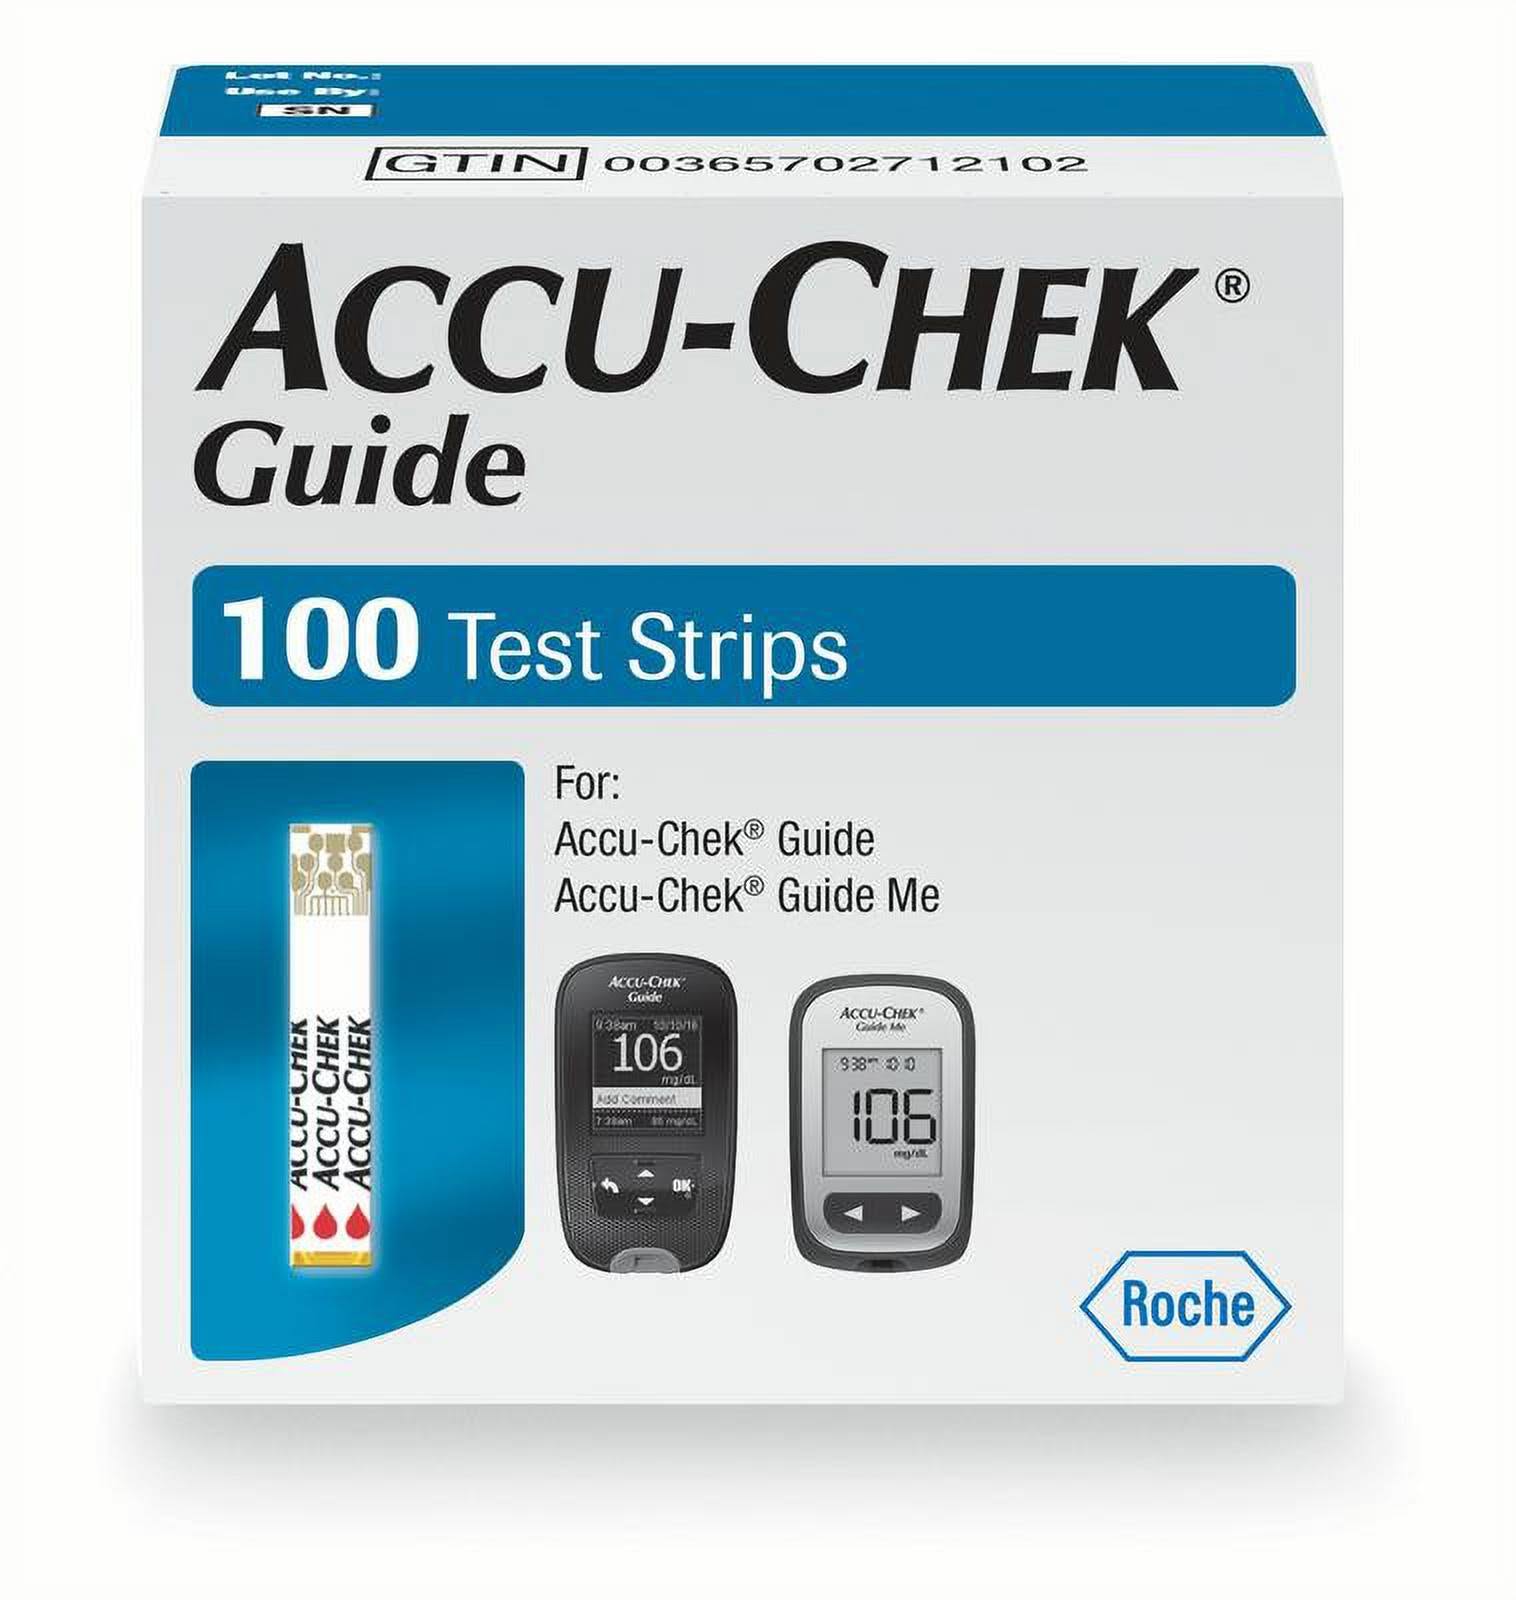 Accu-Chek Accu-Chek Guide Test Strips 100.0 Count